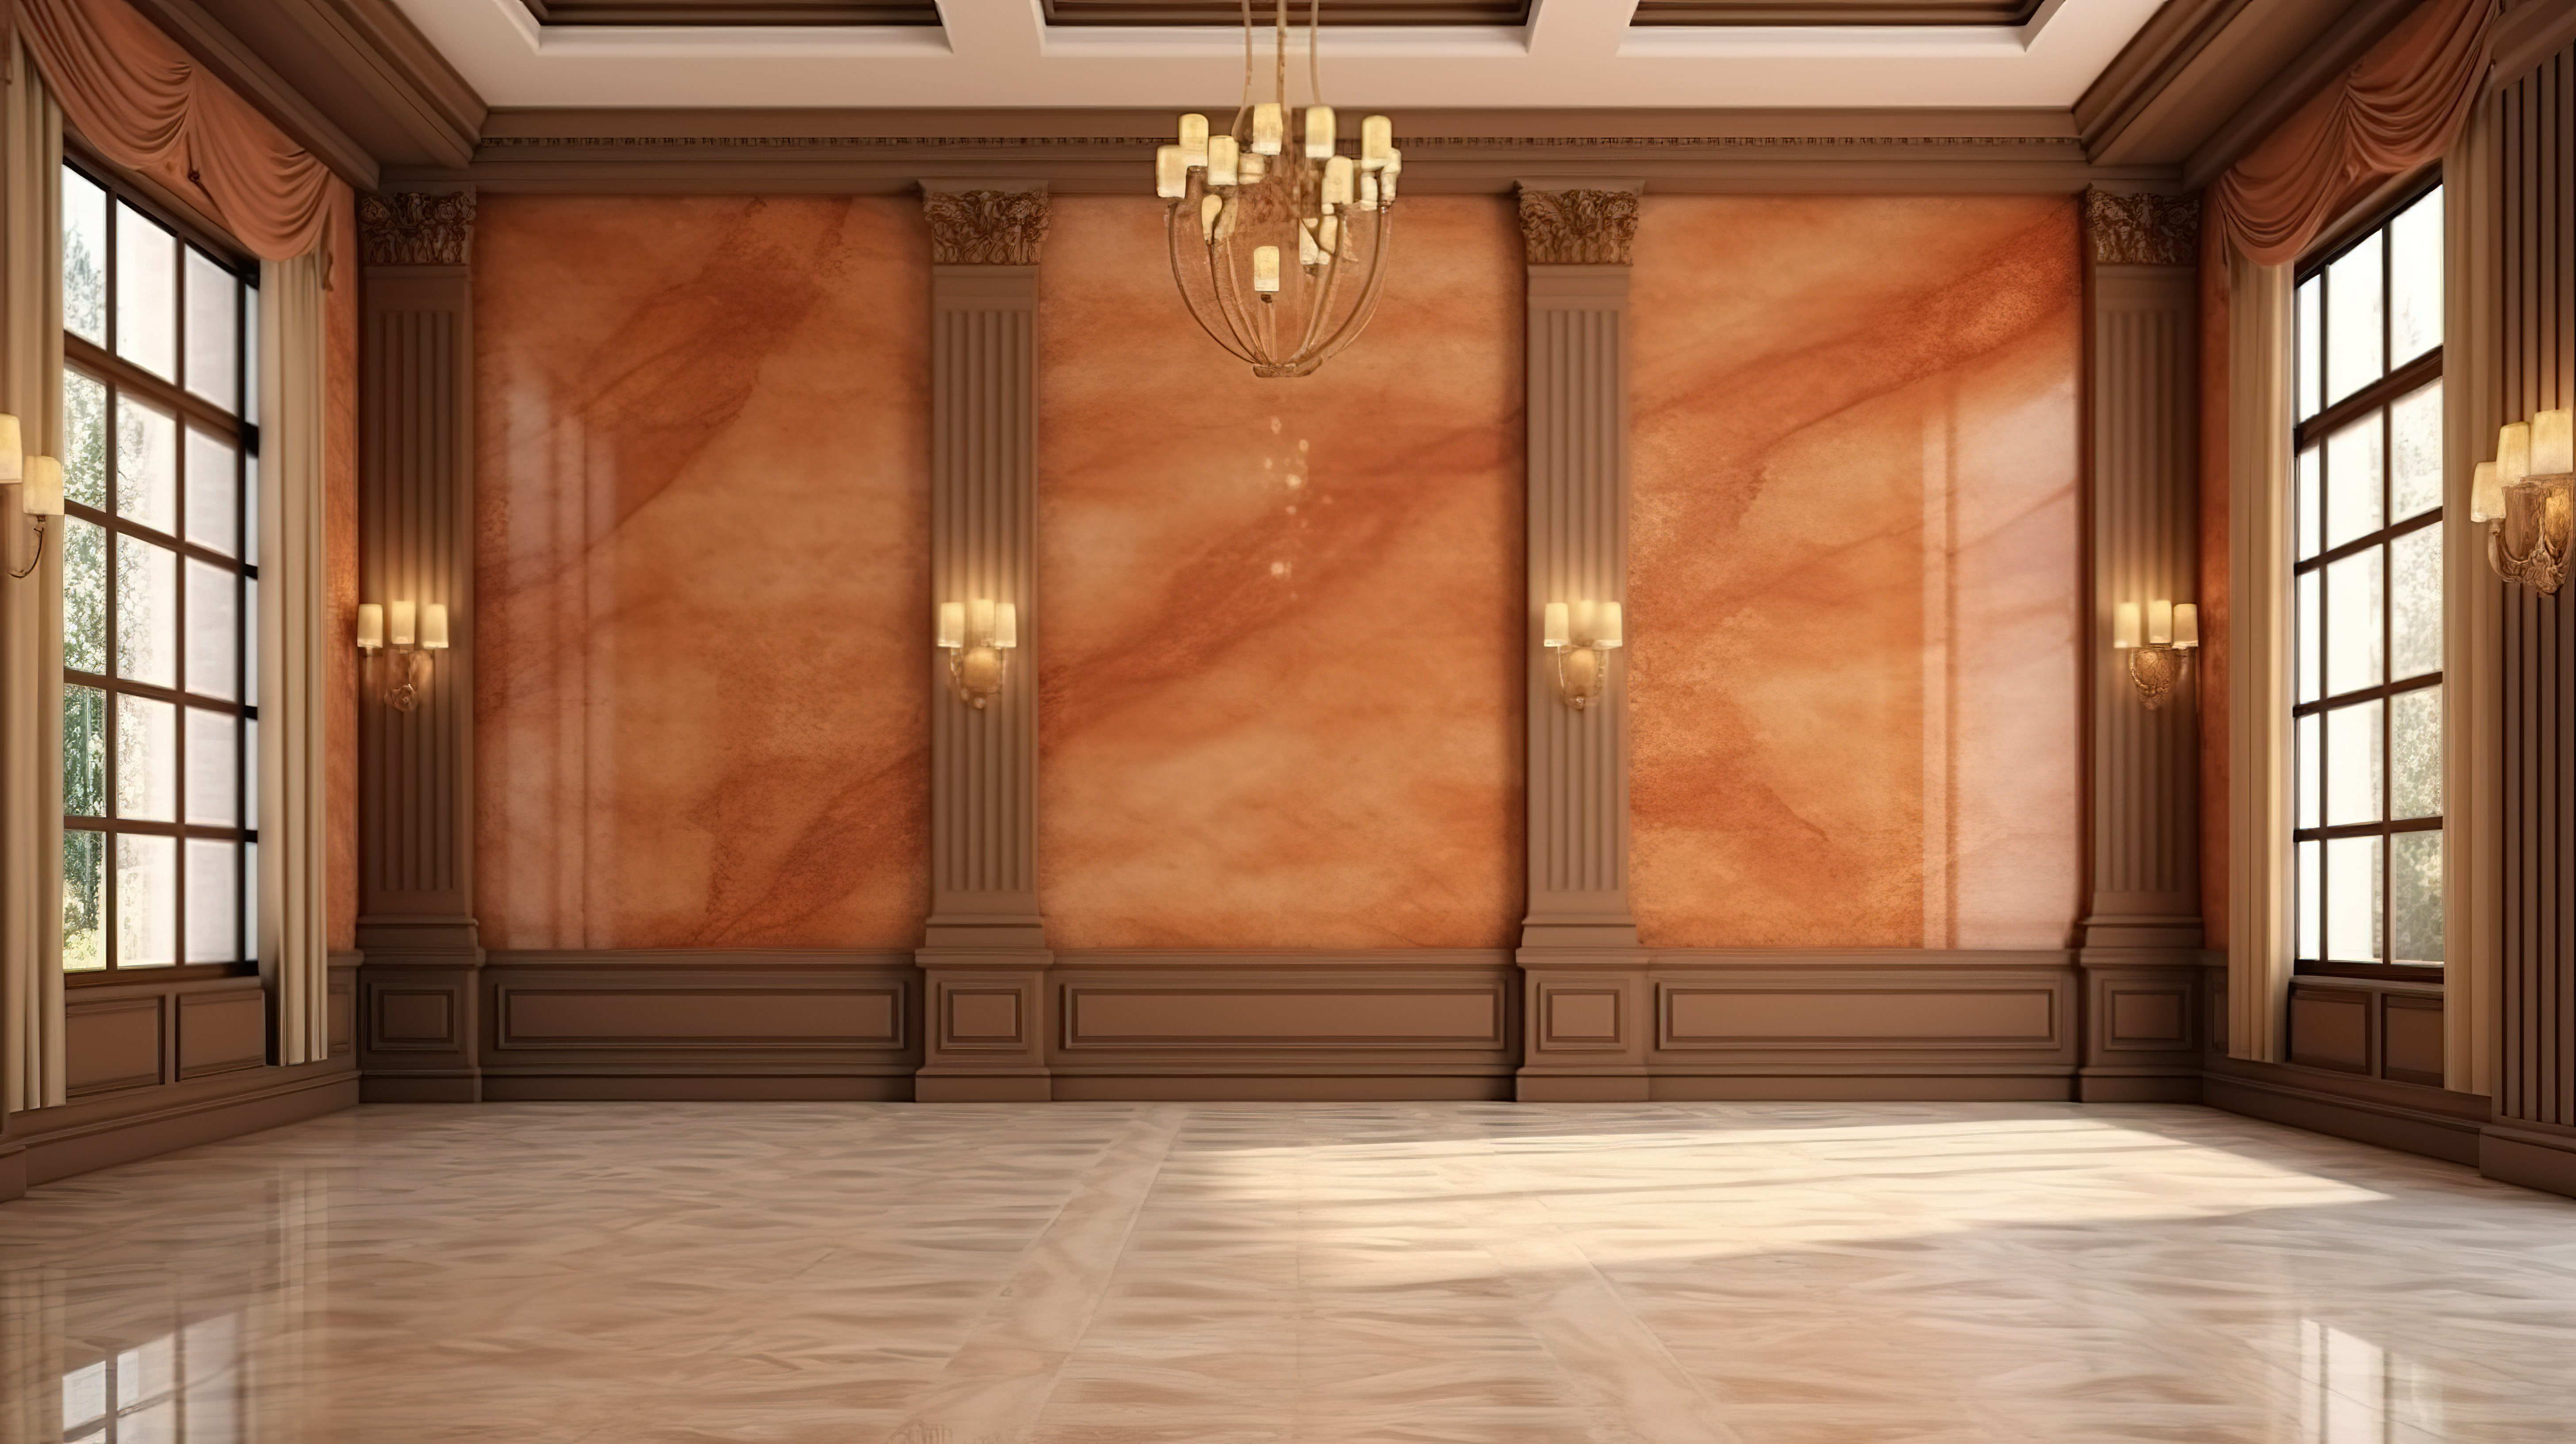 豪华古典风格客厅的渲染 3D 图像，花岗岩瓷砖上有棕色墙壁装饰图片